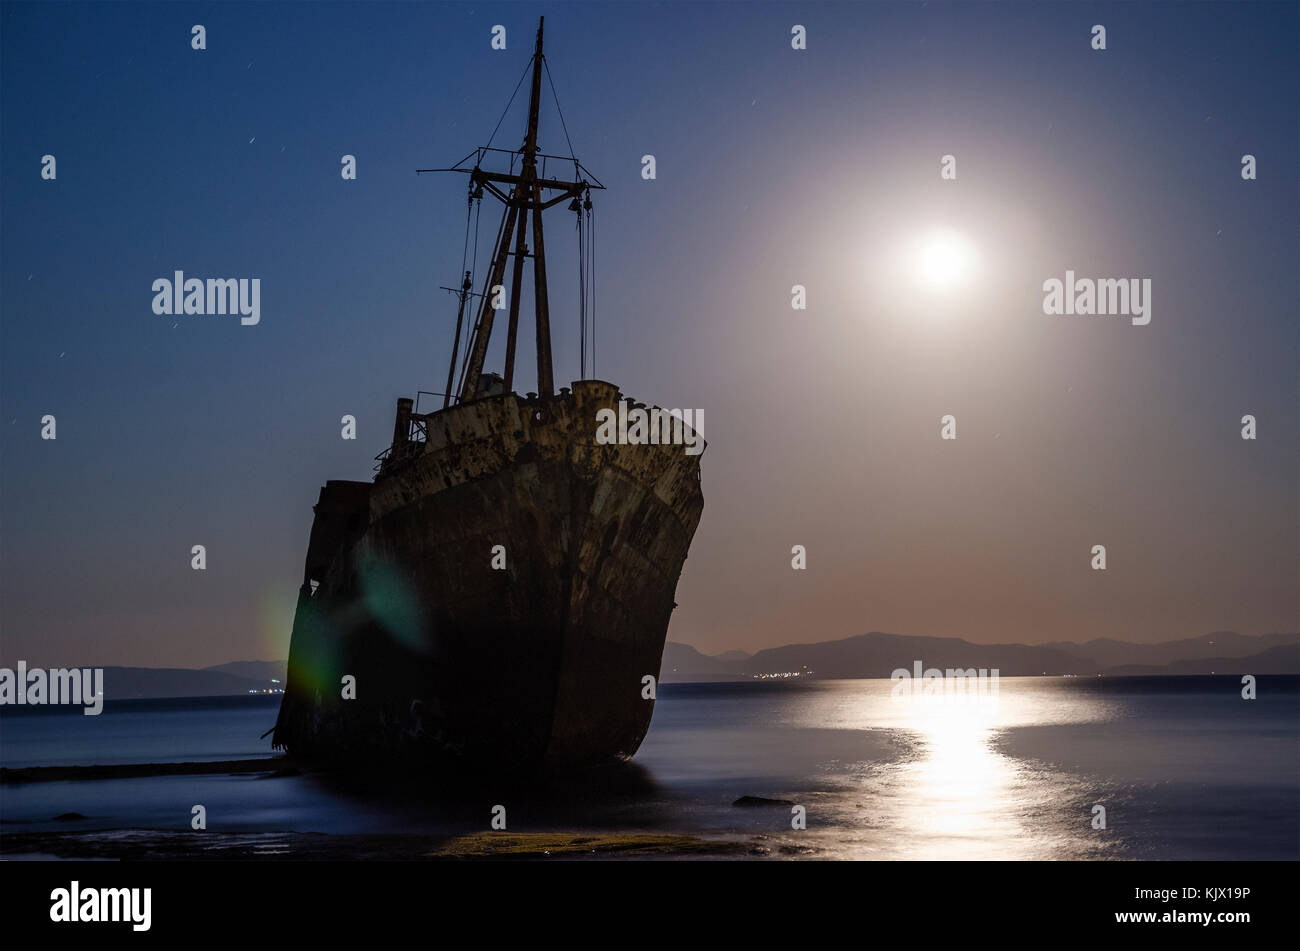 Das berühmte Schiffswrack Agios Dimitrios in der Nähe von Gythio. Lakonien - Griechenland Stockfoto